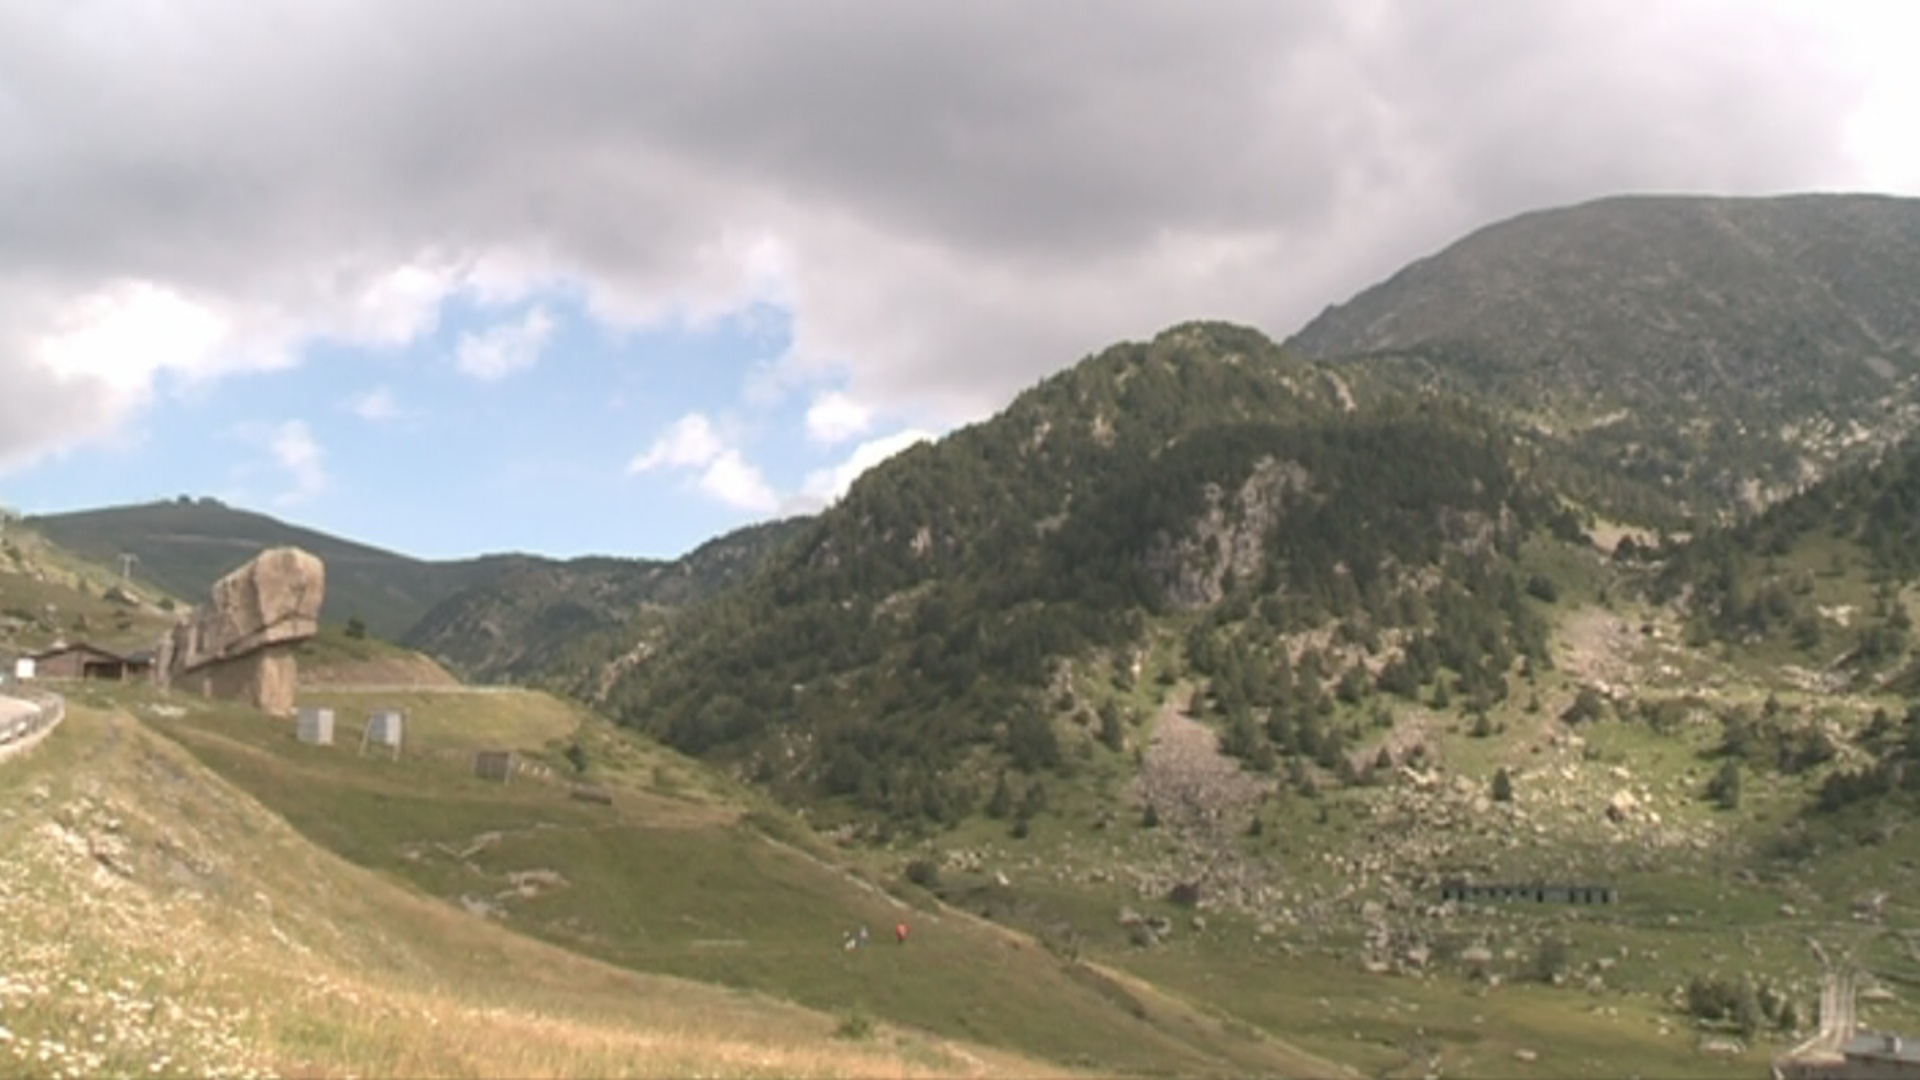 150 bloguers de viatges aterraran a Andorra al maig